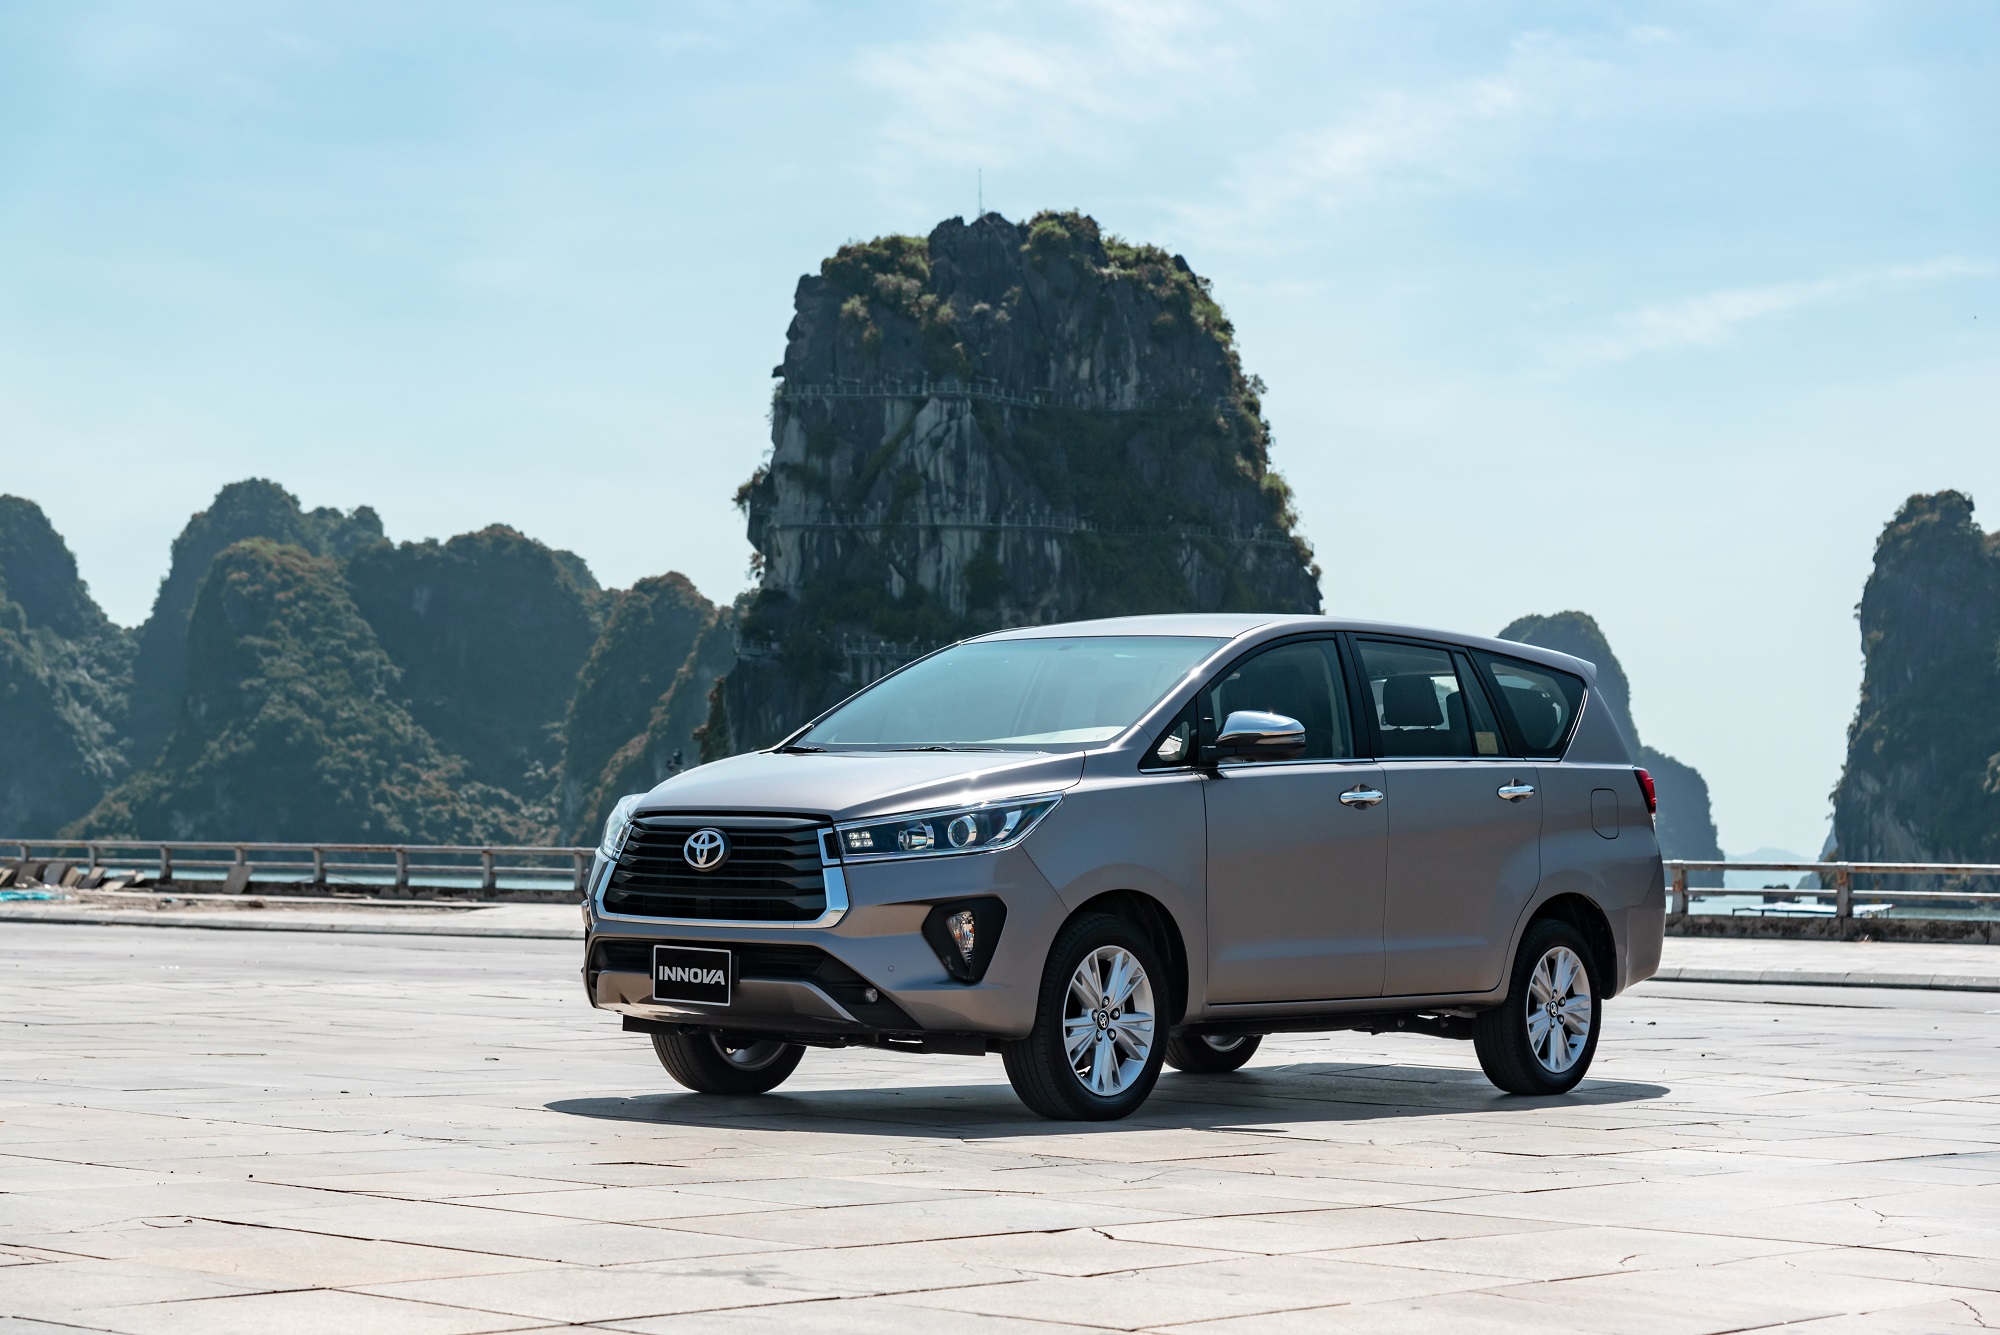 Toyota Việt Nam dành ưu đãi cho khách hàng mua Innova tháng 6/2022